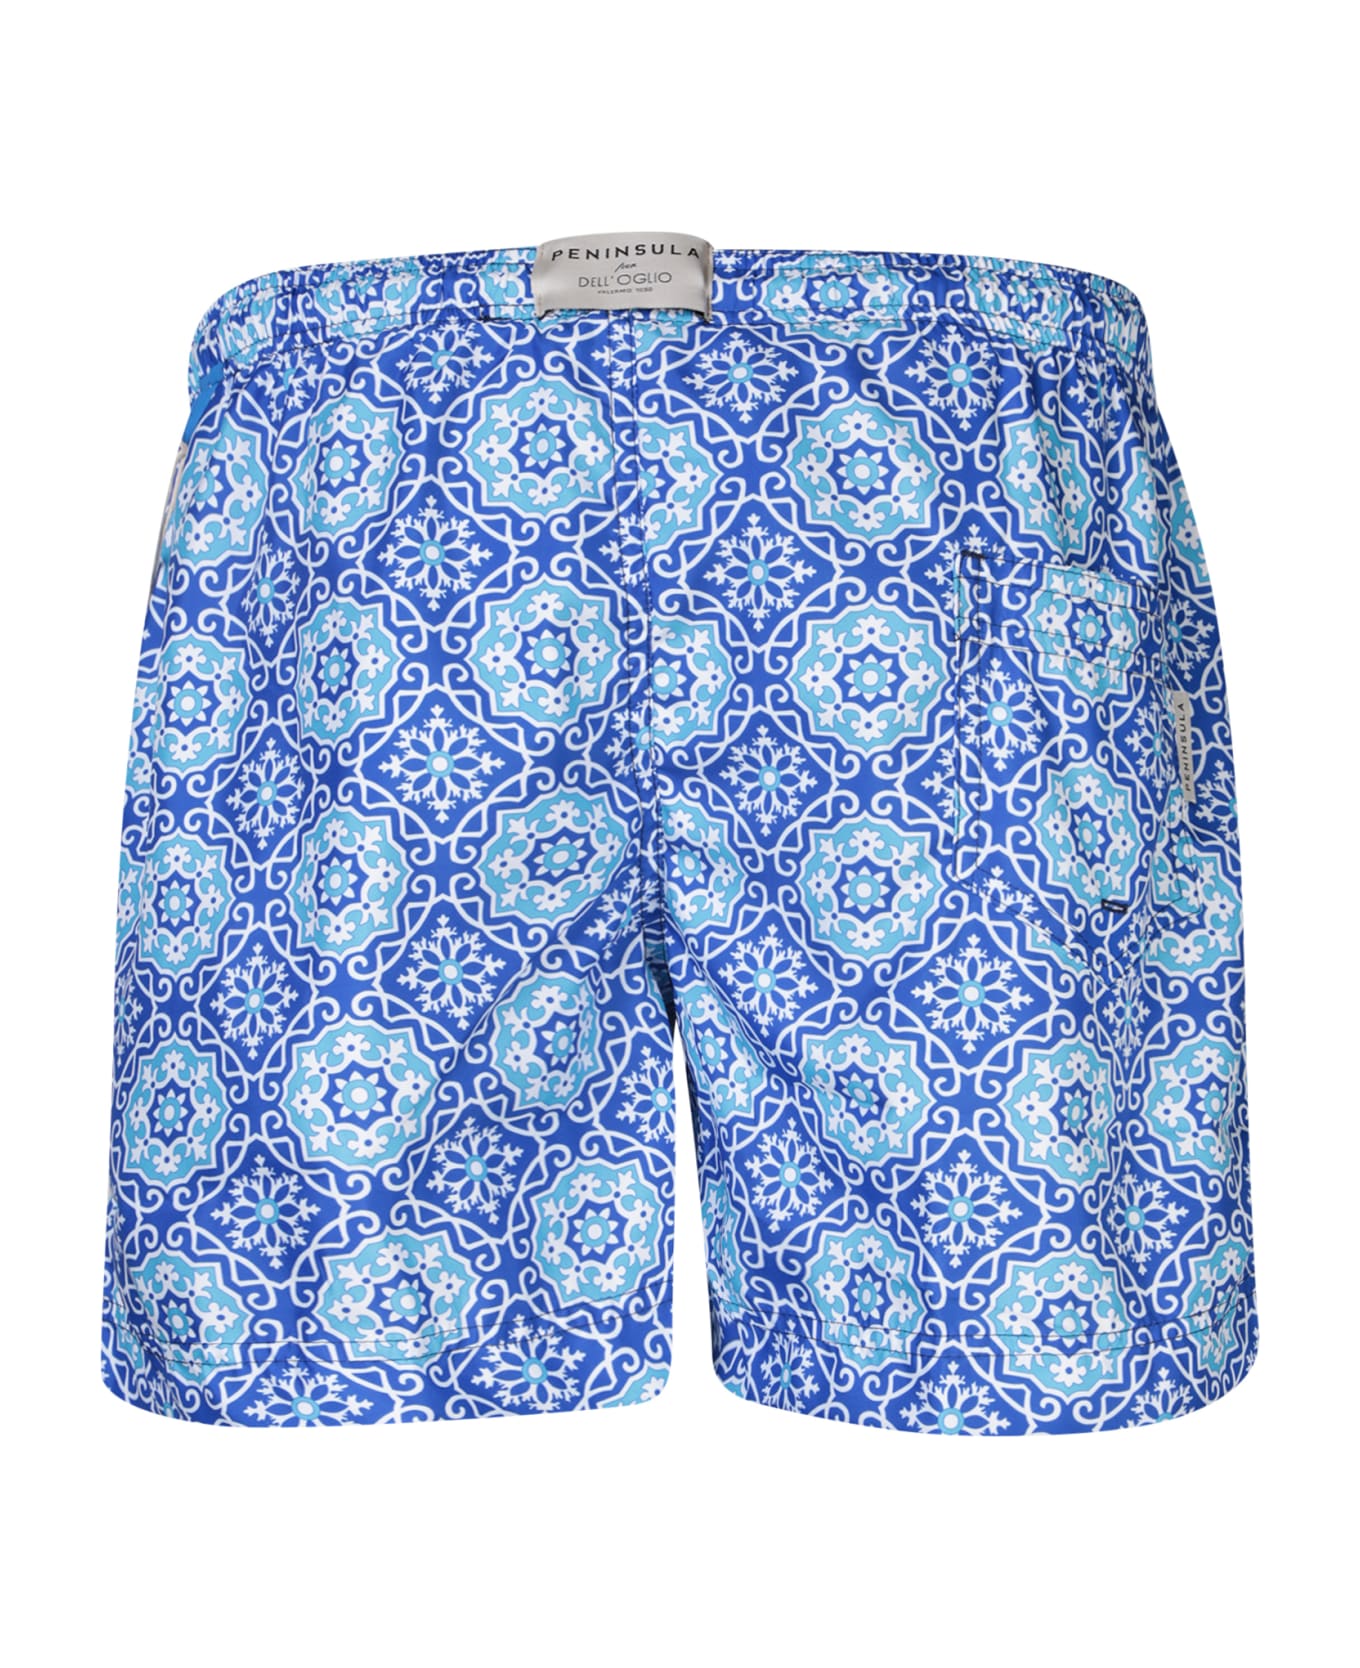 Peninsula Swimwear Patterned Blue Boxer Swim Shorts By Peninsula - Blue